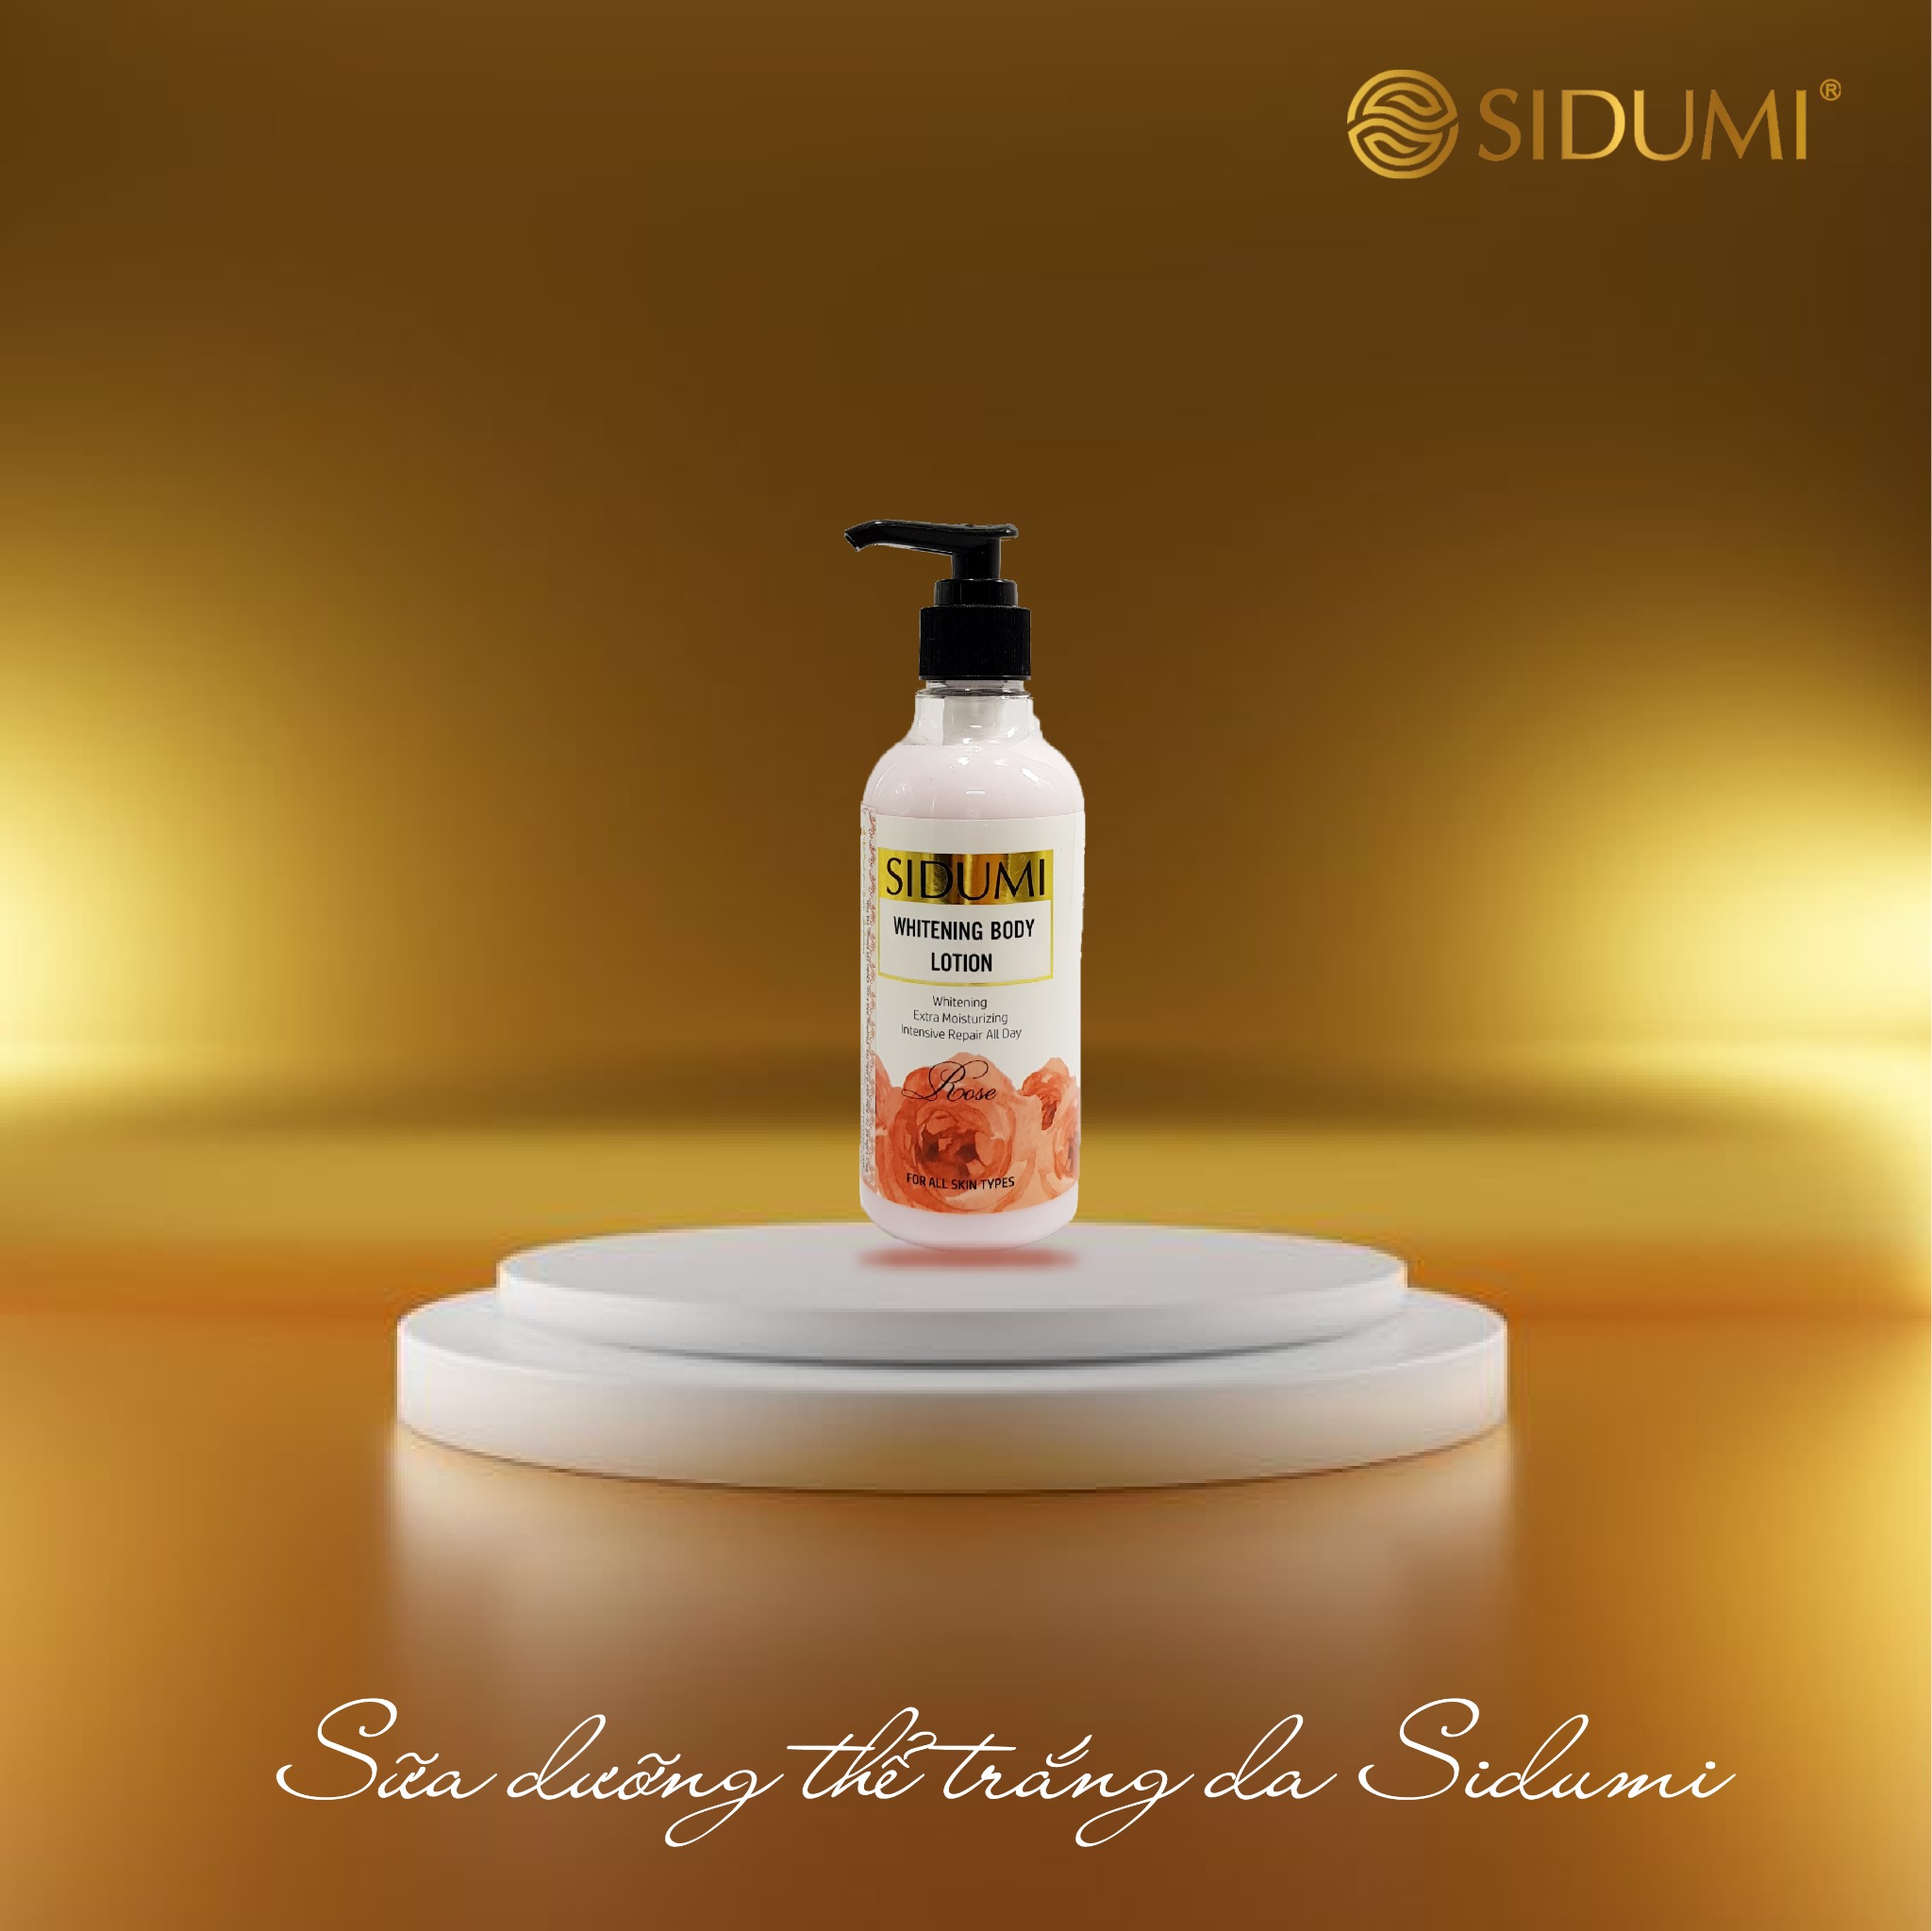 Sữa dưỡng thể trắng da Sidumi -Whitening Body Lotion - SDM 606